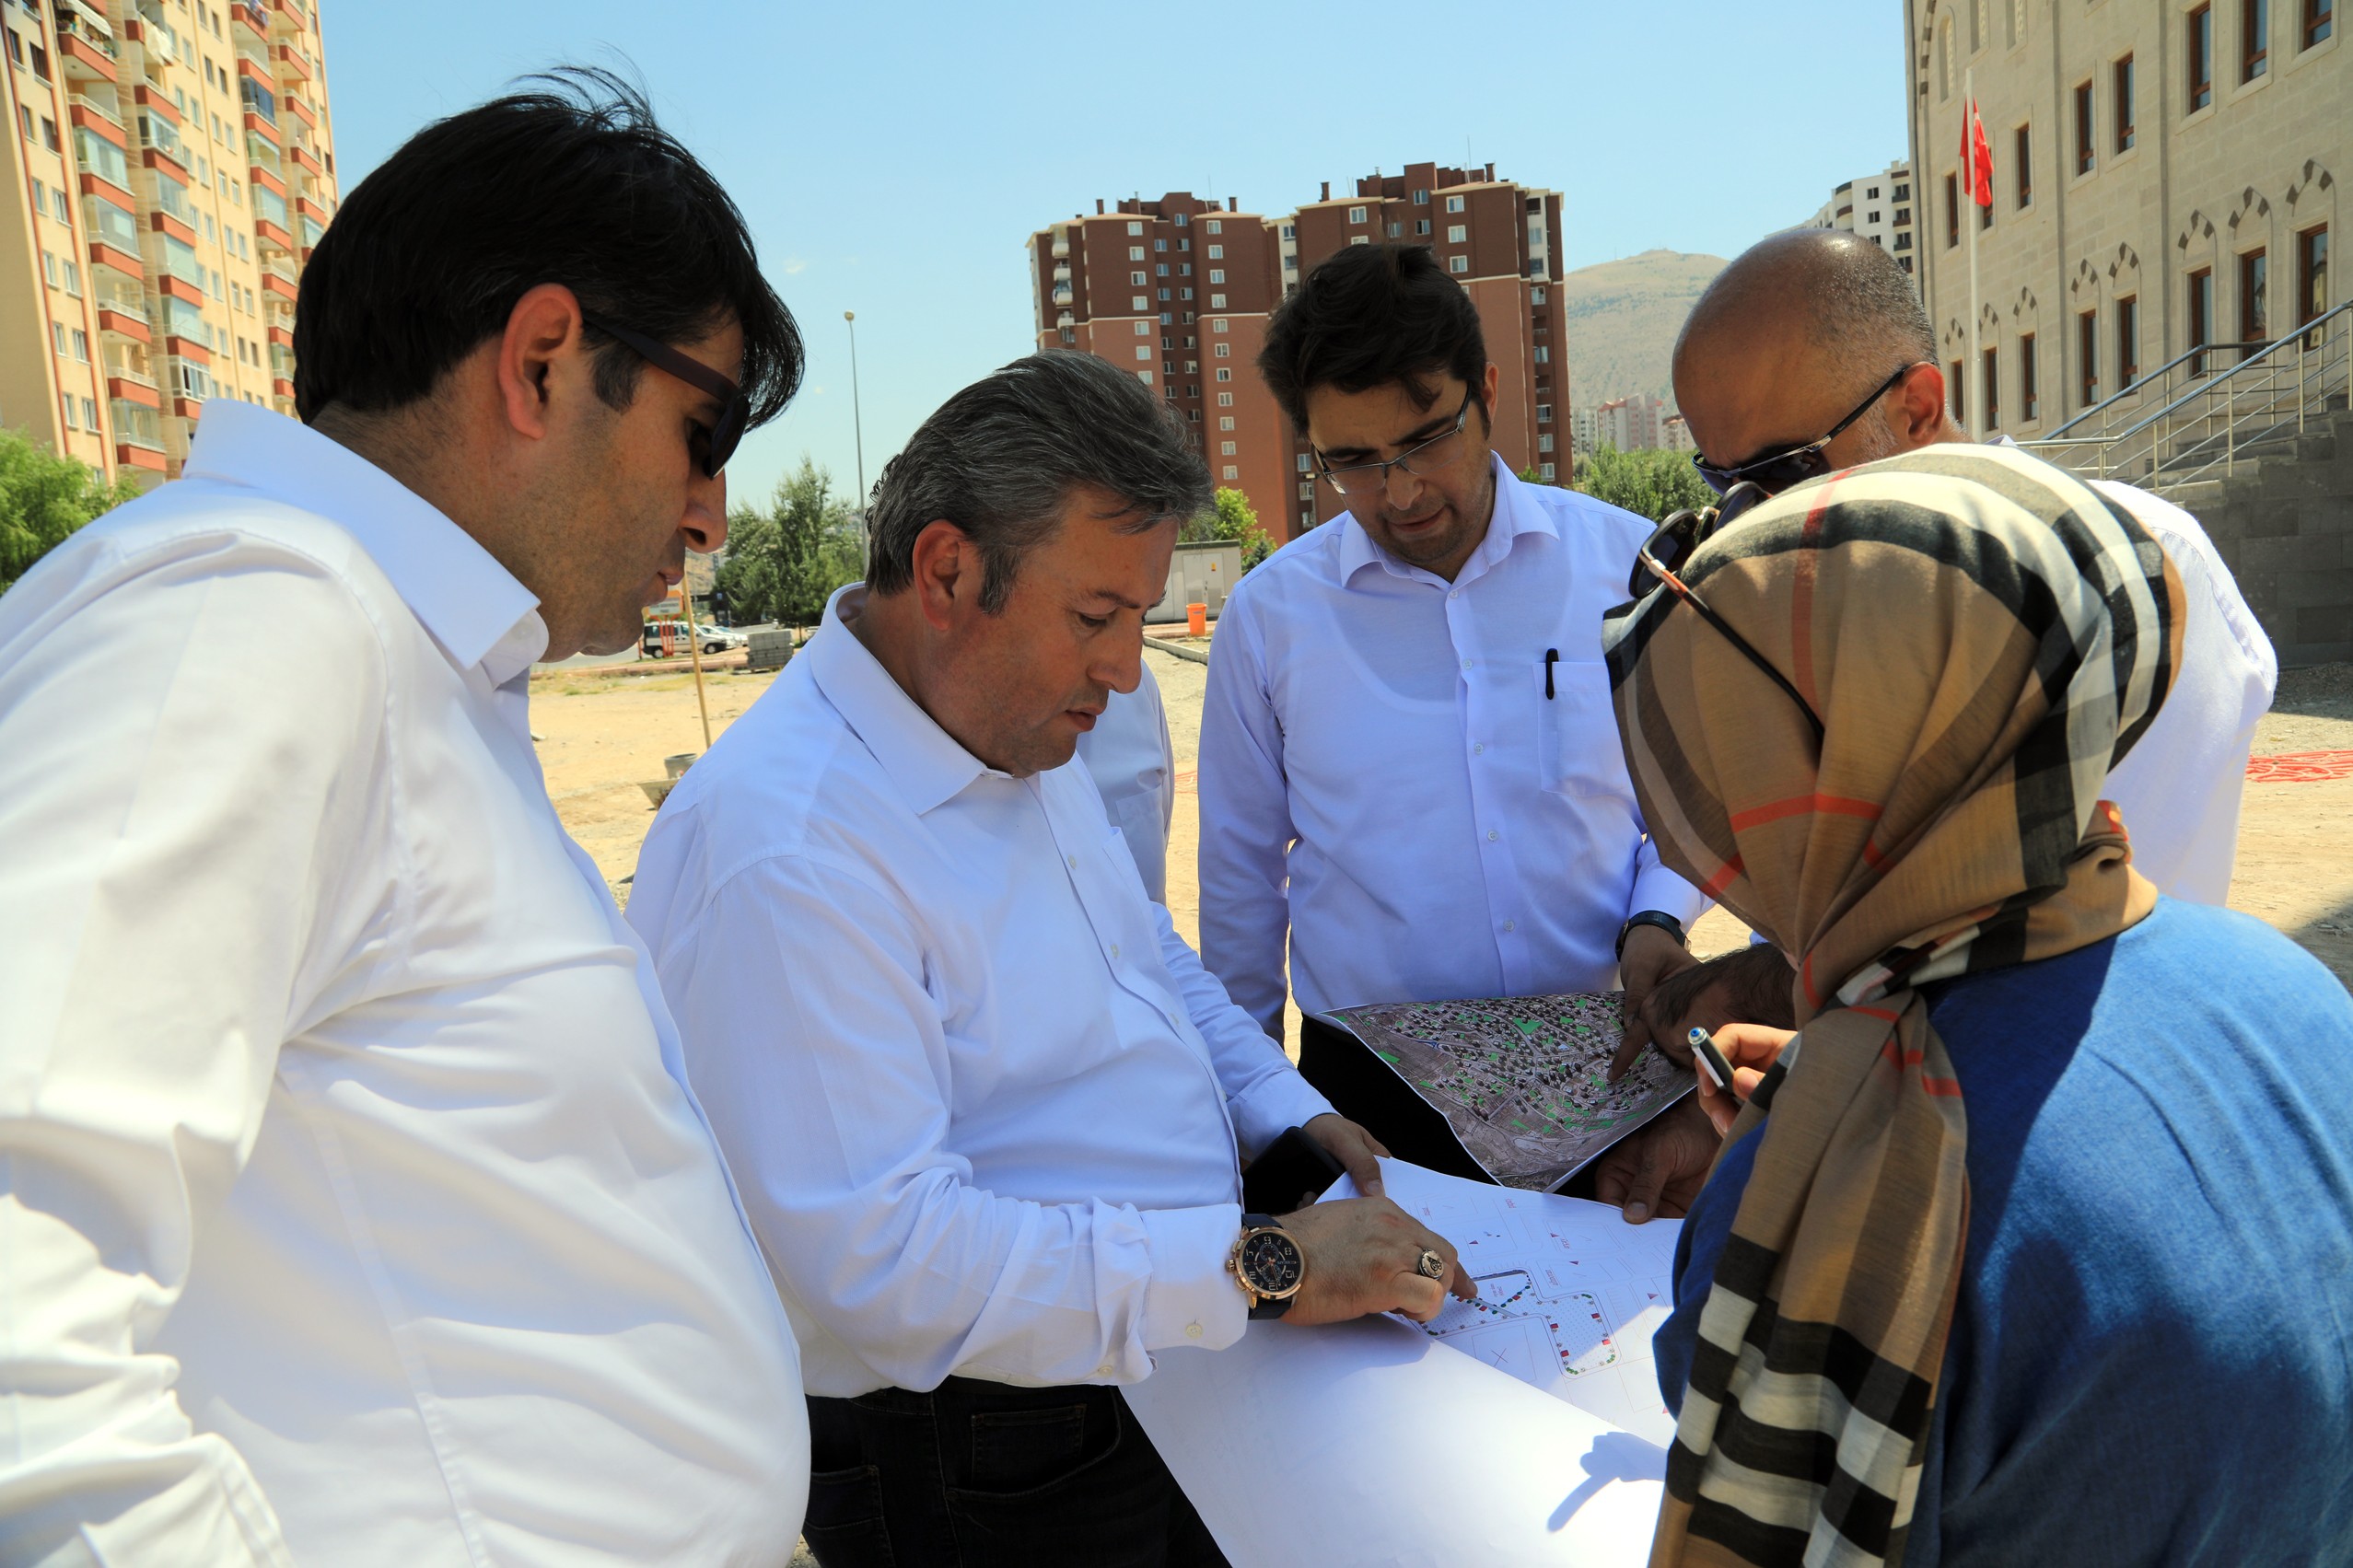 Talas Belediyesi Mevlana Camii’nin çevresini düzenleyecek